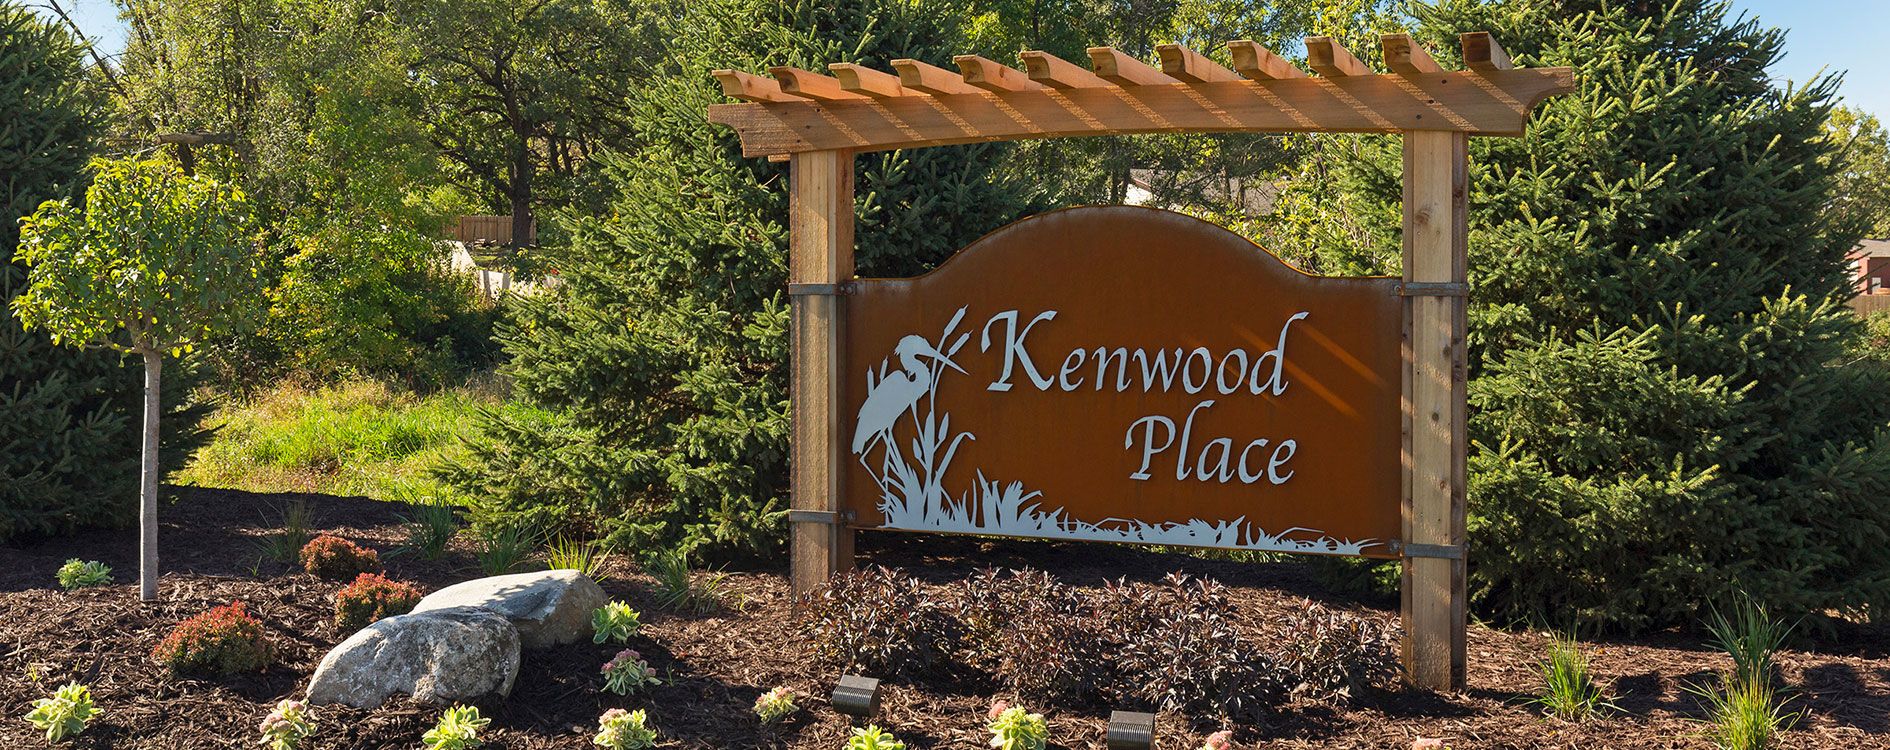 Kenwood Place,55044